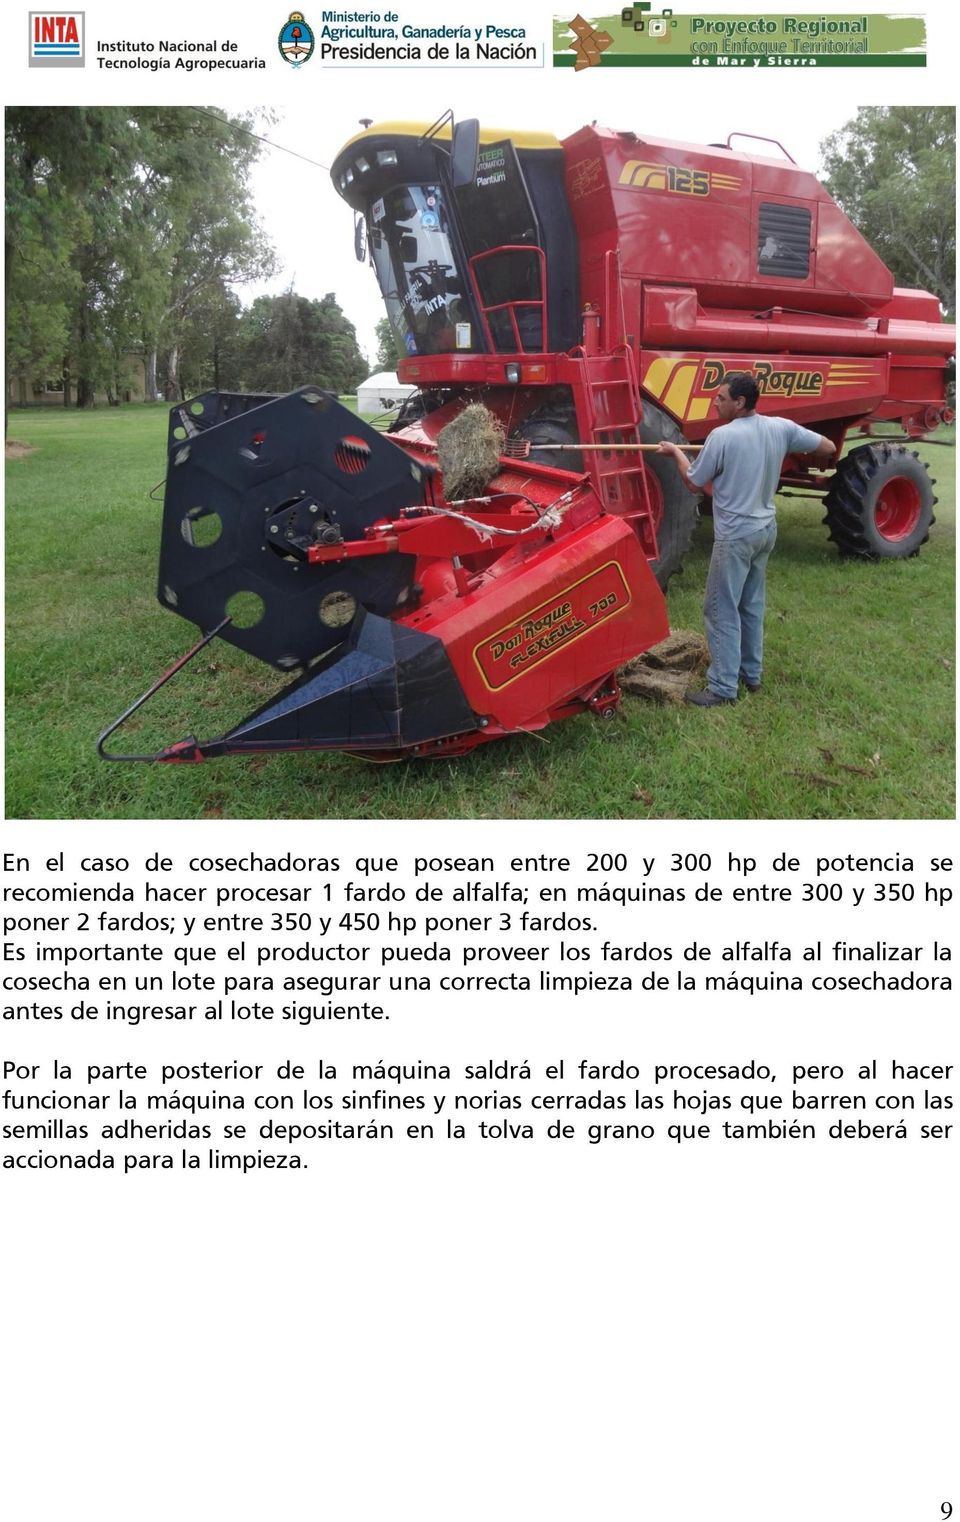 Es importante que el productor pueda proveer los fardos de alfalfa al finalizar la cosecha en un lote para asegurar una correcta limpieza de la máquina cosechadora